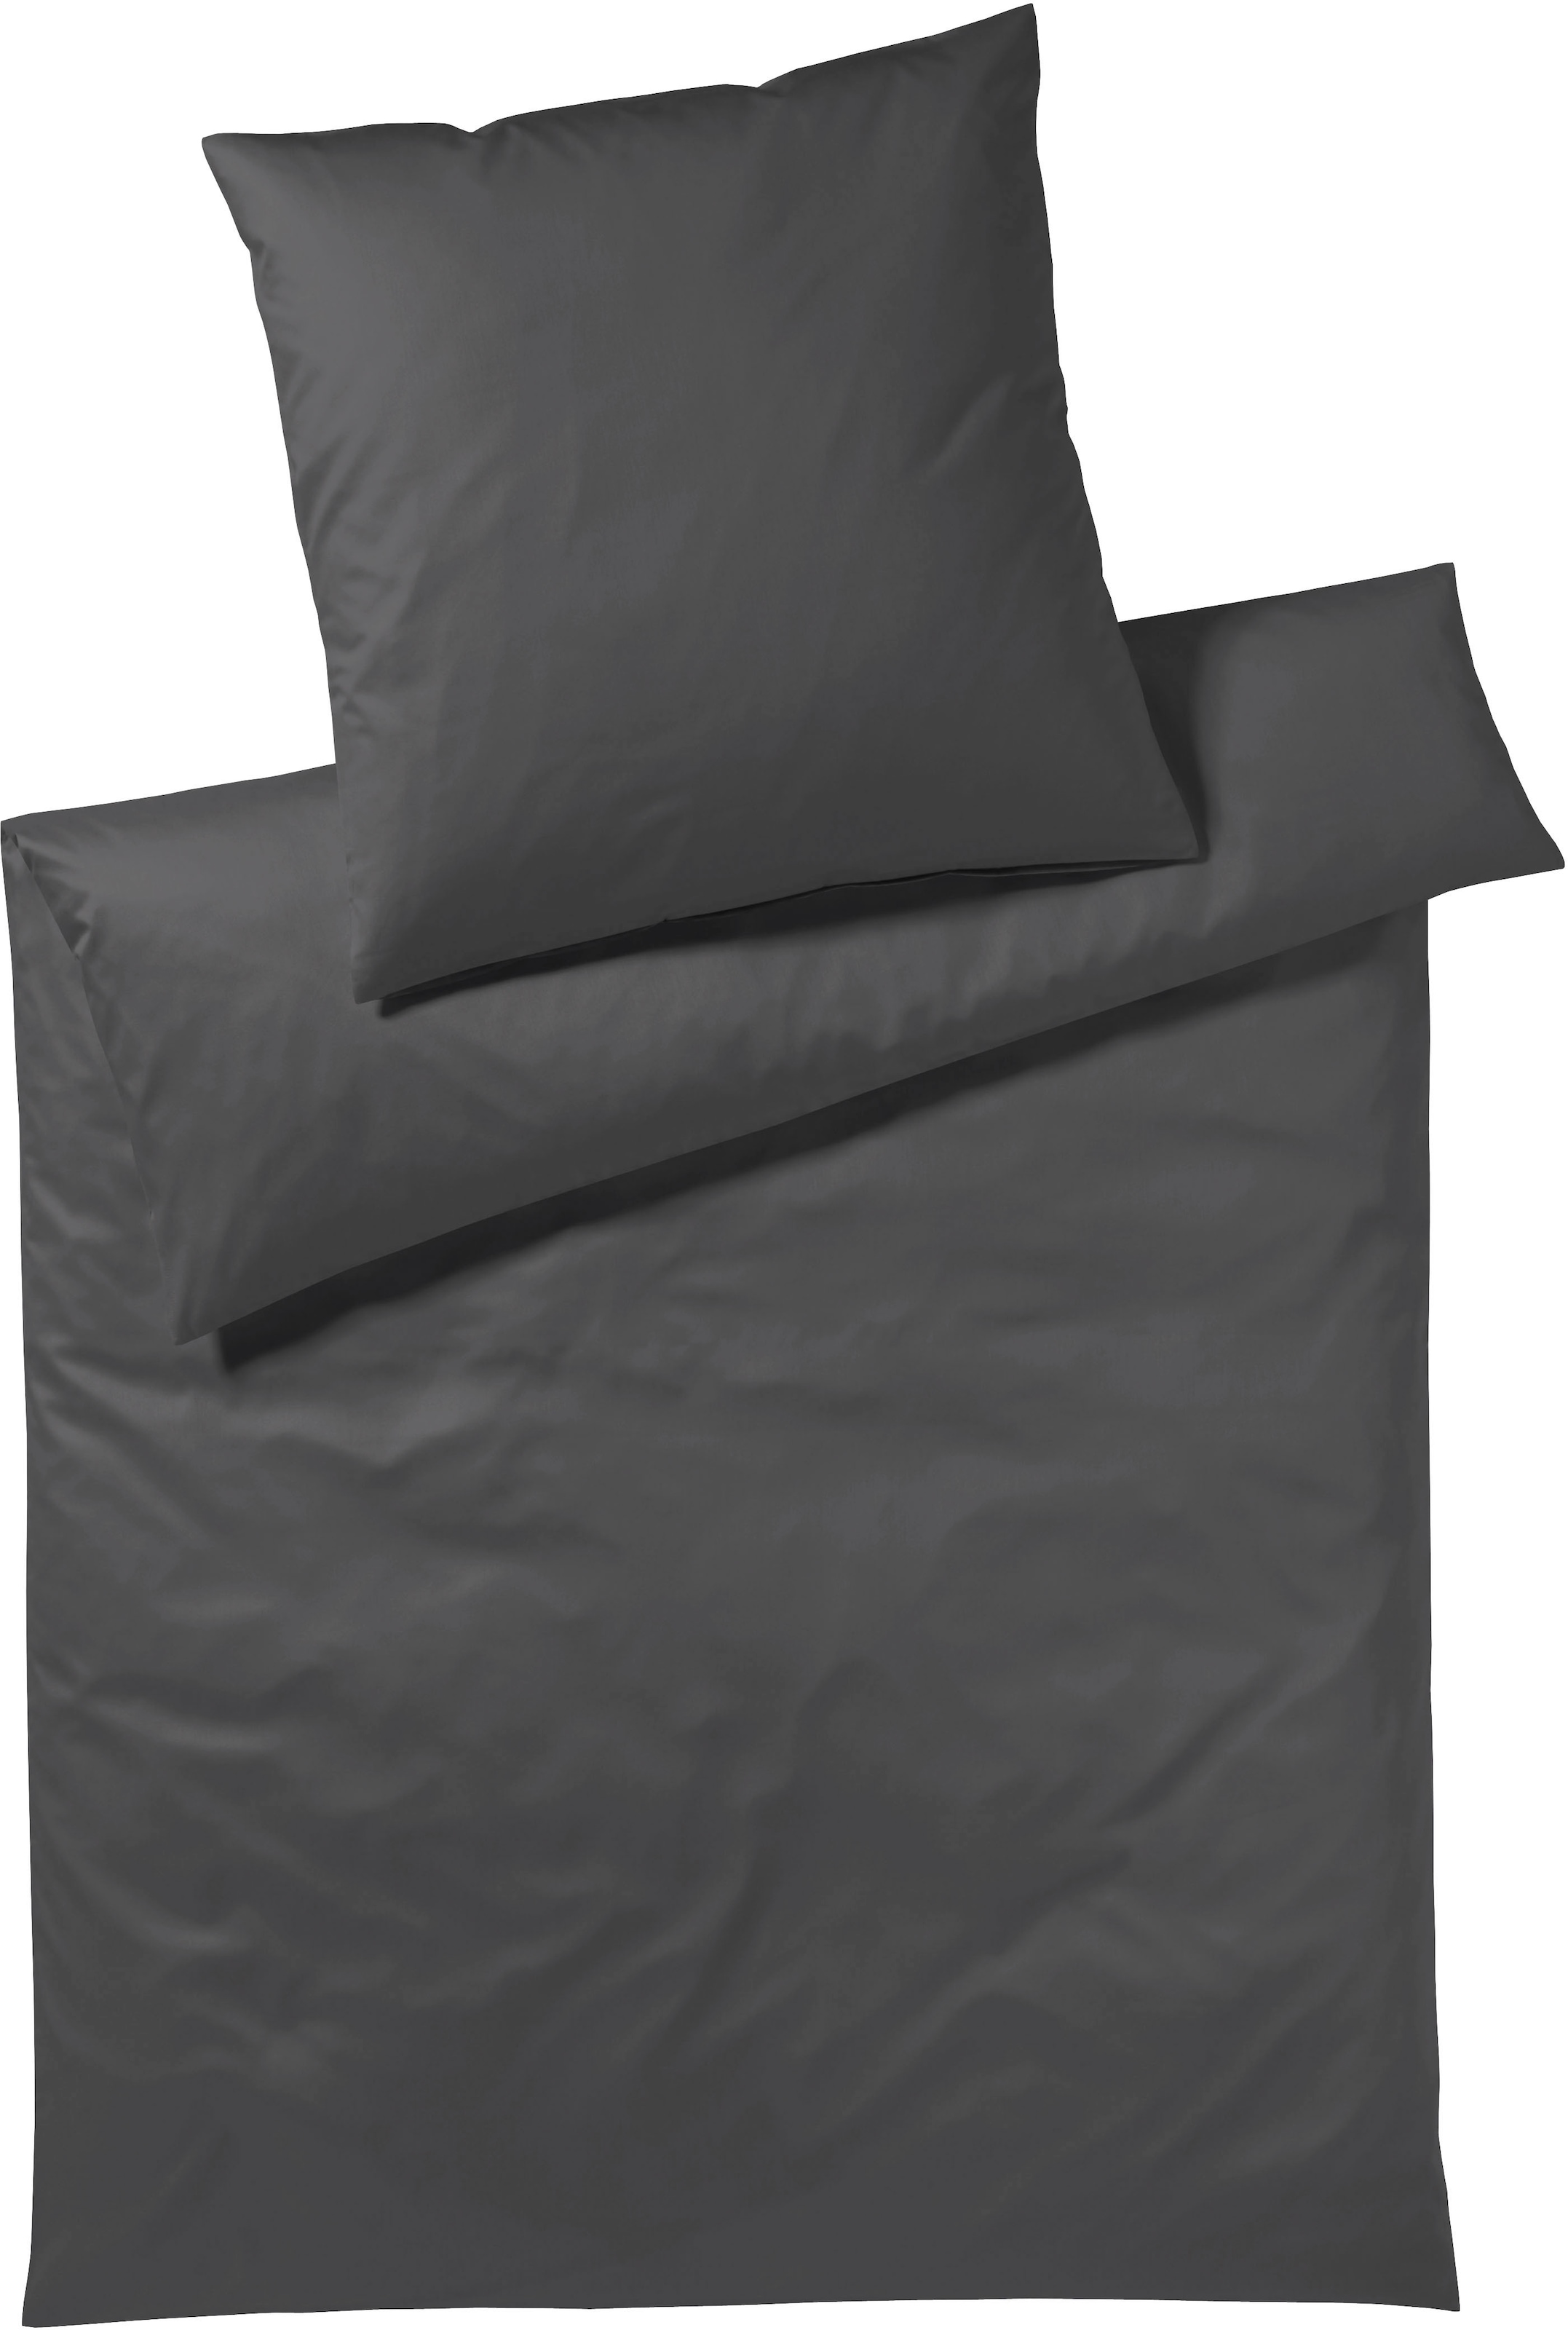 Elegante Bettwäsche »Solid in Mako Satin und Mako Jersey Qualität, 100% Baumwolle, Bett- und Kopfkissenbezug mit Reißverschluss, Satin mit seidigem Glanz, Sommerbettwäsche, ganzjährig einsetzbar«, (2 tlg.)